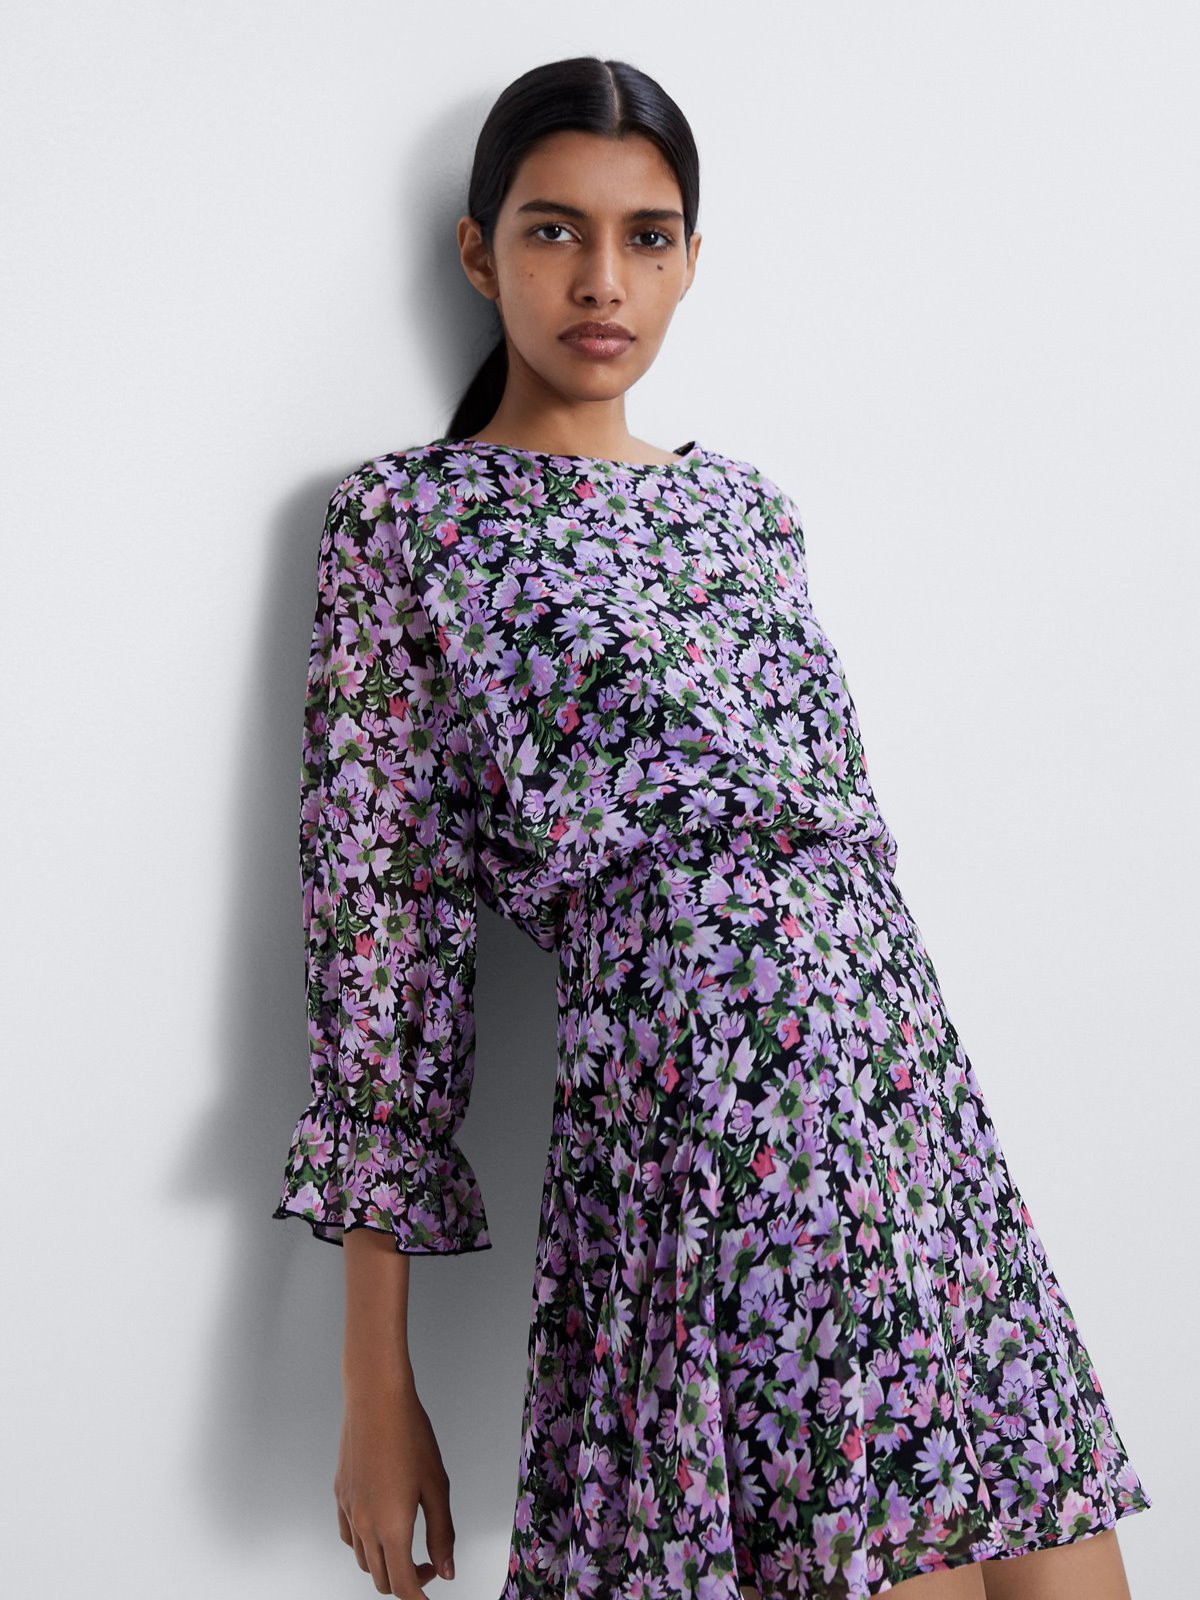 4-vestido-lila-flores-zara. Minivestido floral en tonos morados de Zara